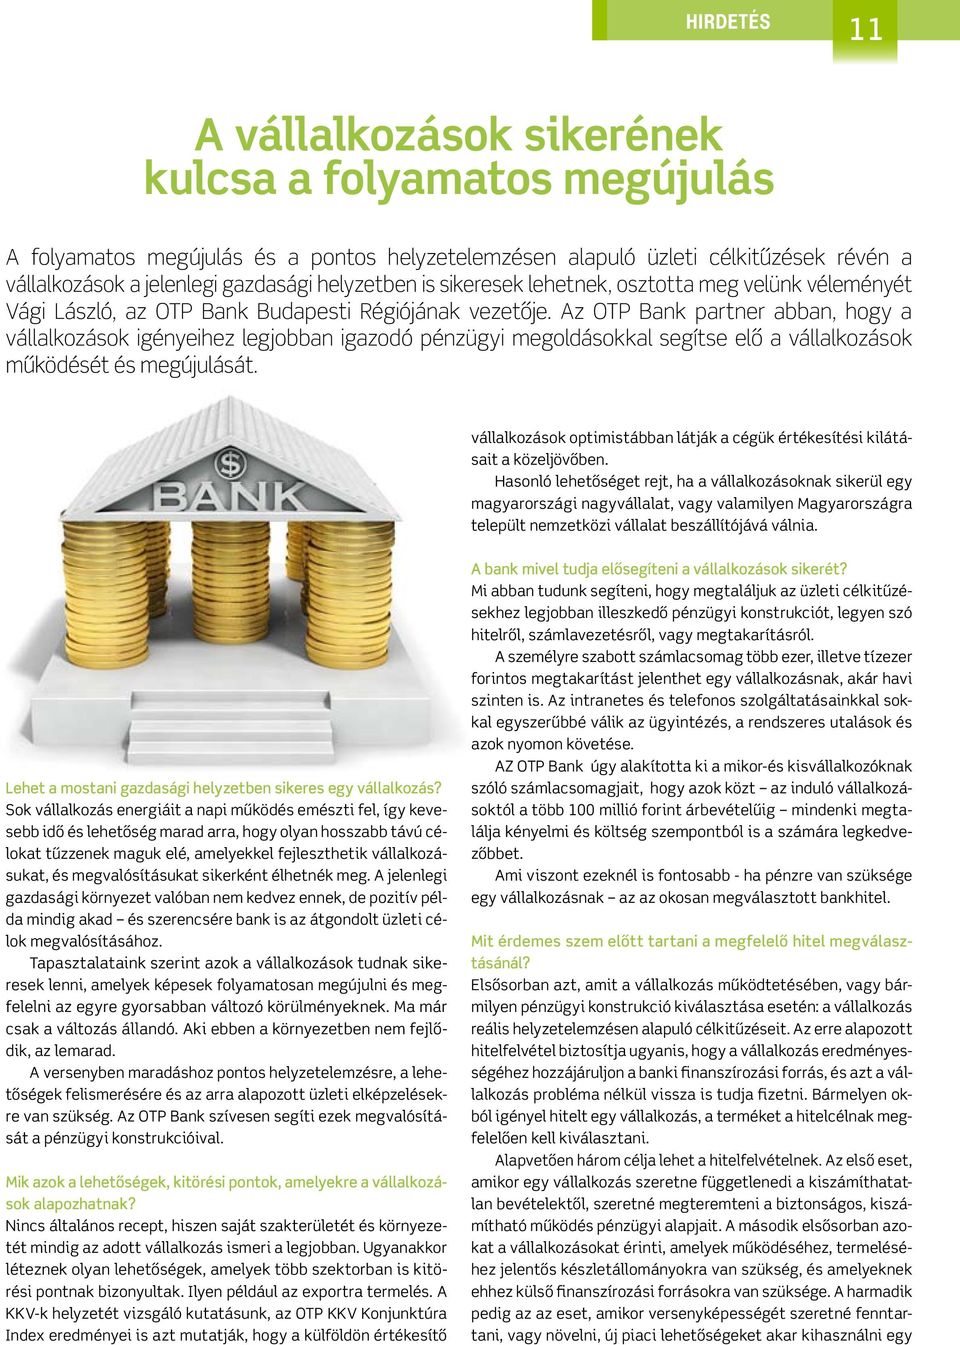 Az OTP Bank partner abban, hogy a vállalkozások igényeihez legjobban igazodó pénzügyi megoldásokkal segítse elő a vállalkozások működését és megújulását.